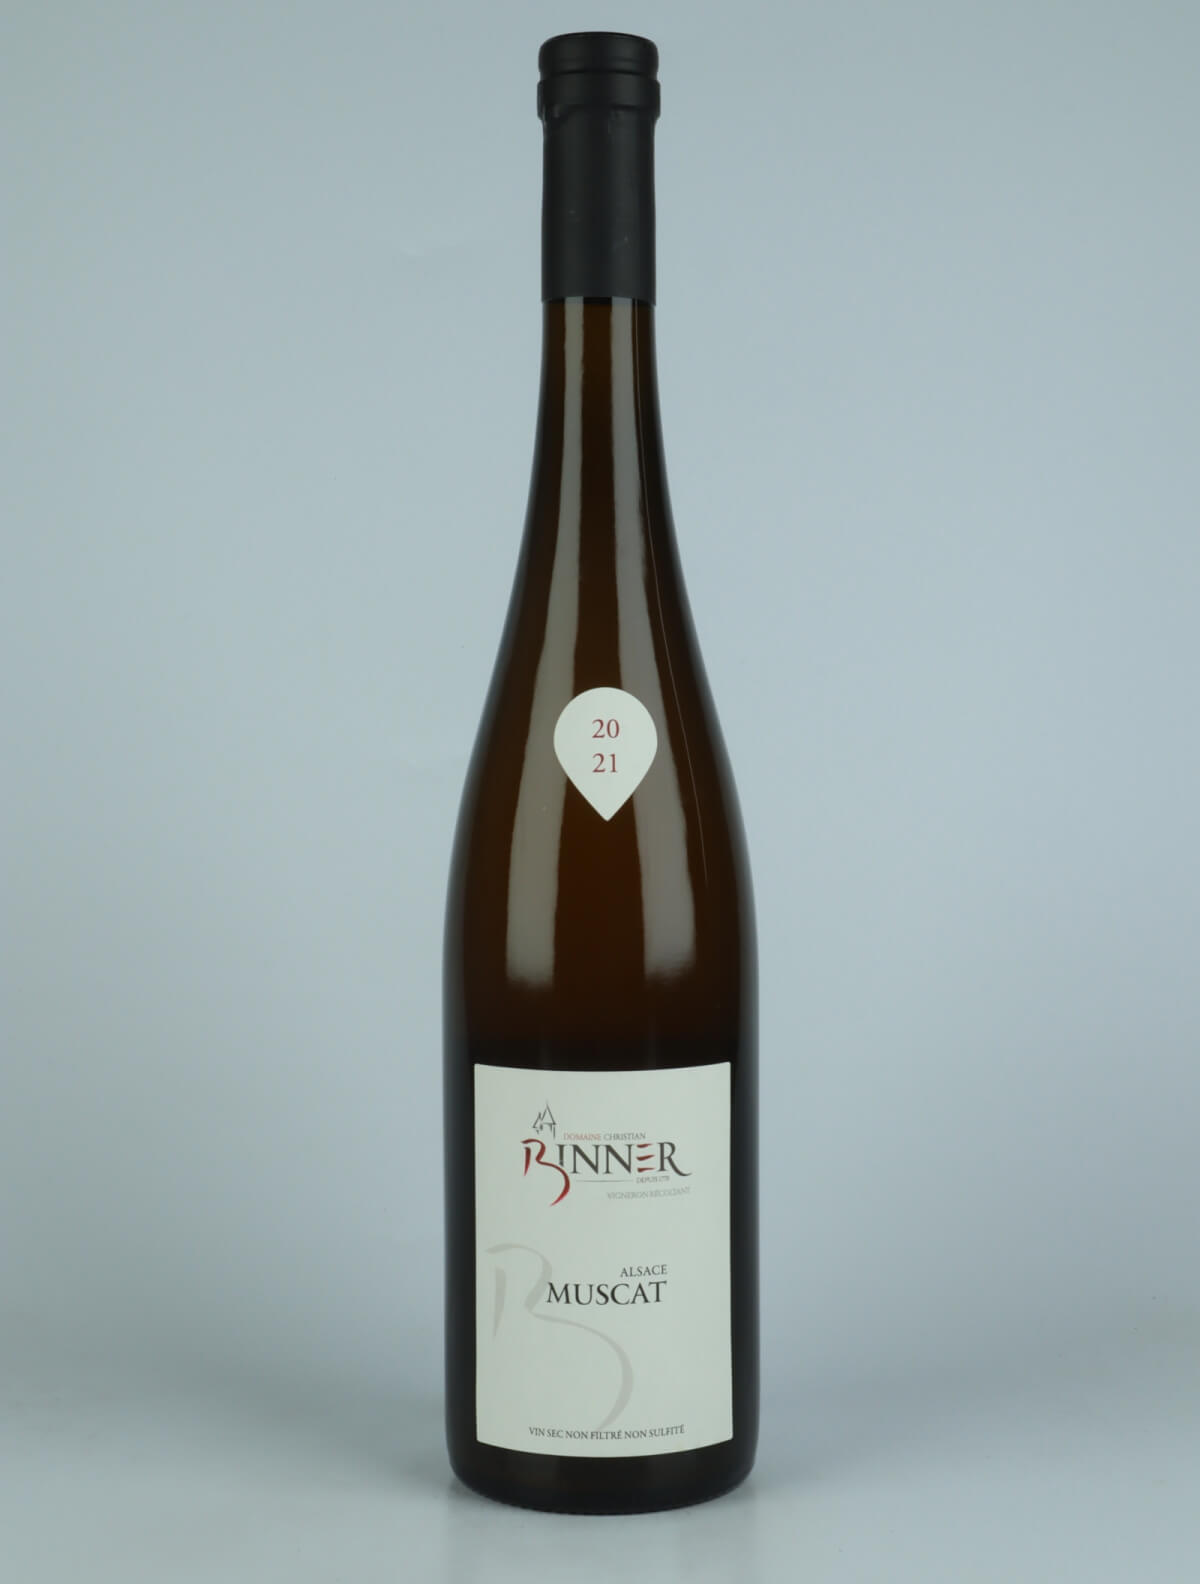 En flaske N.V. Muscat (20/21) Hvidvin fra Domaine Christian Binner, Alsace i Frankrig